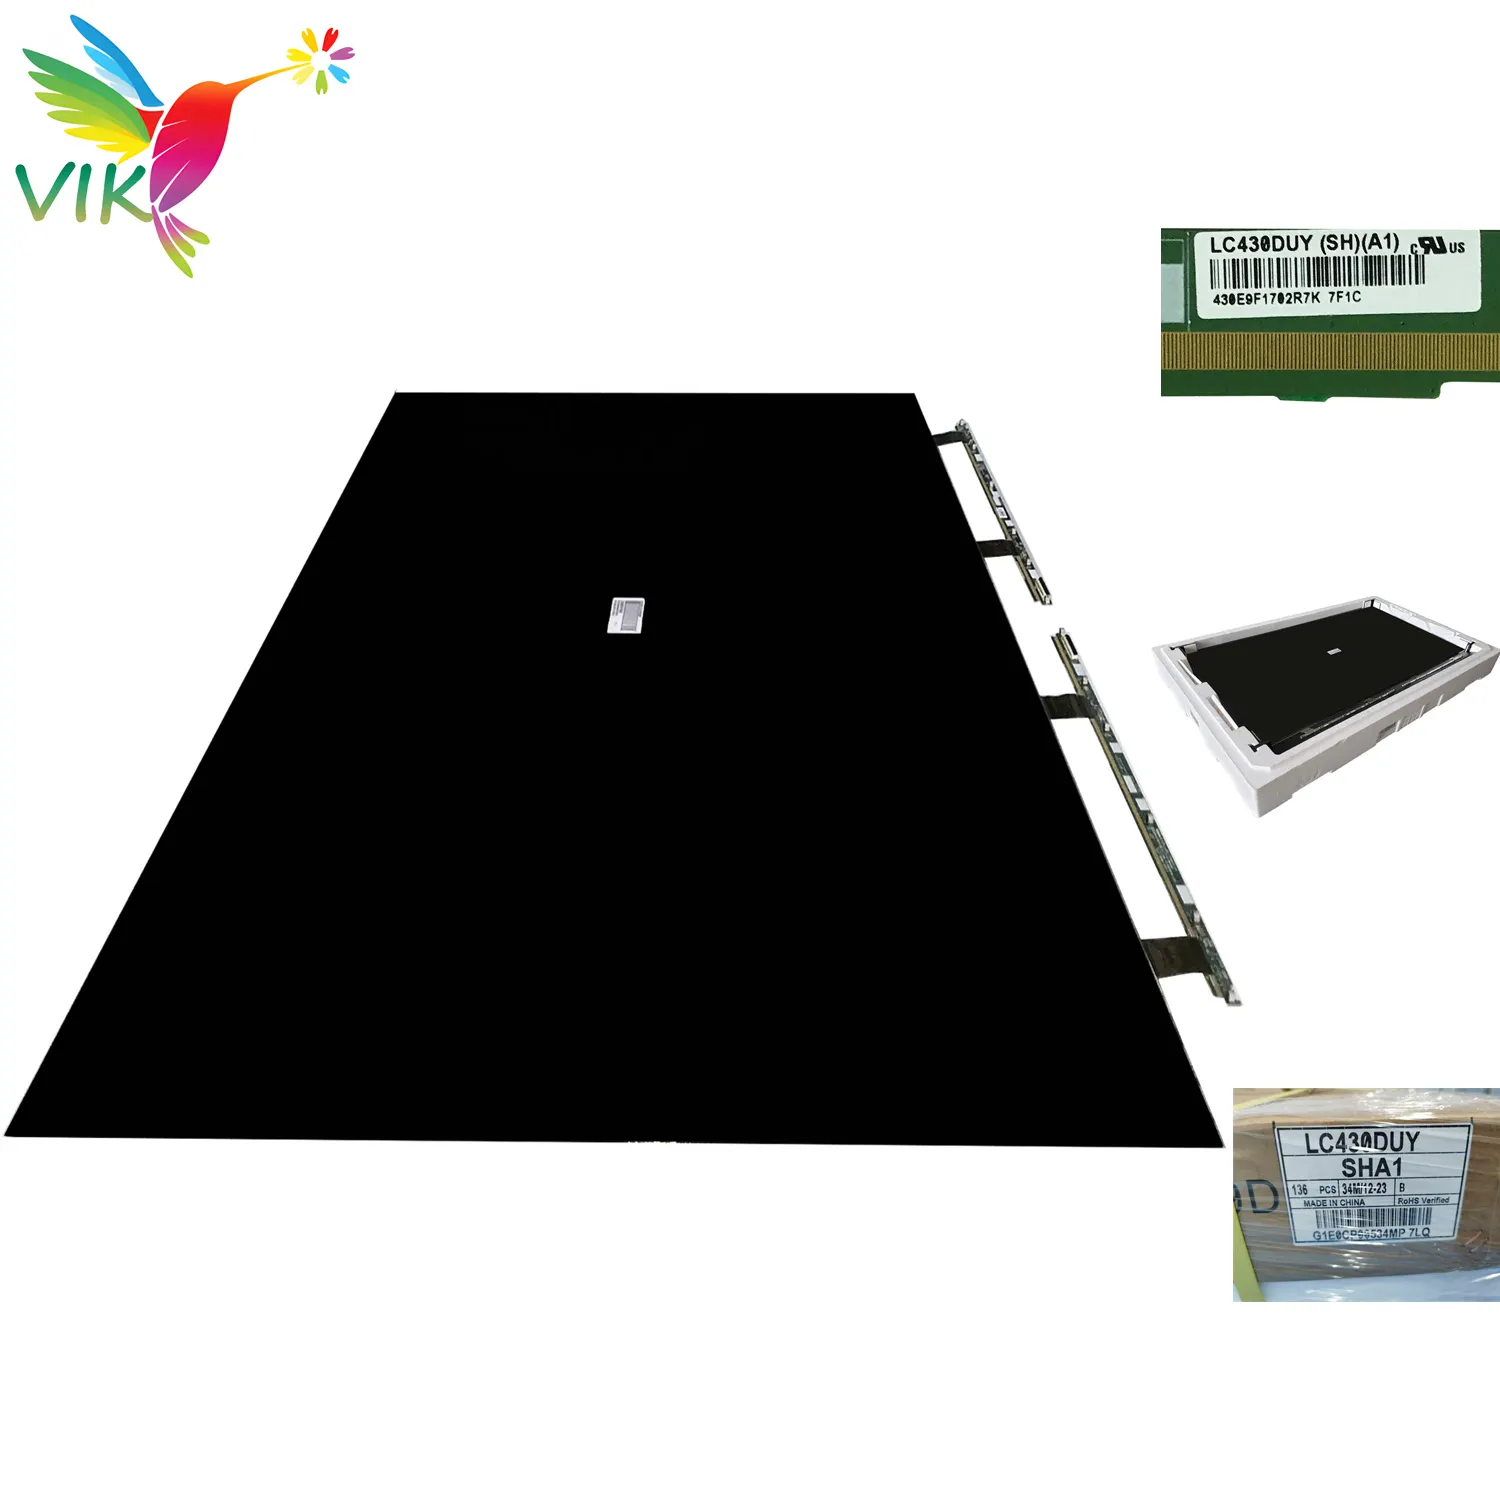 최고의 품질 LC430DUY-SHA1 Led 오픈 셀 패널 교체 LCD TV 화면 예비 부품